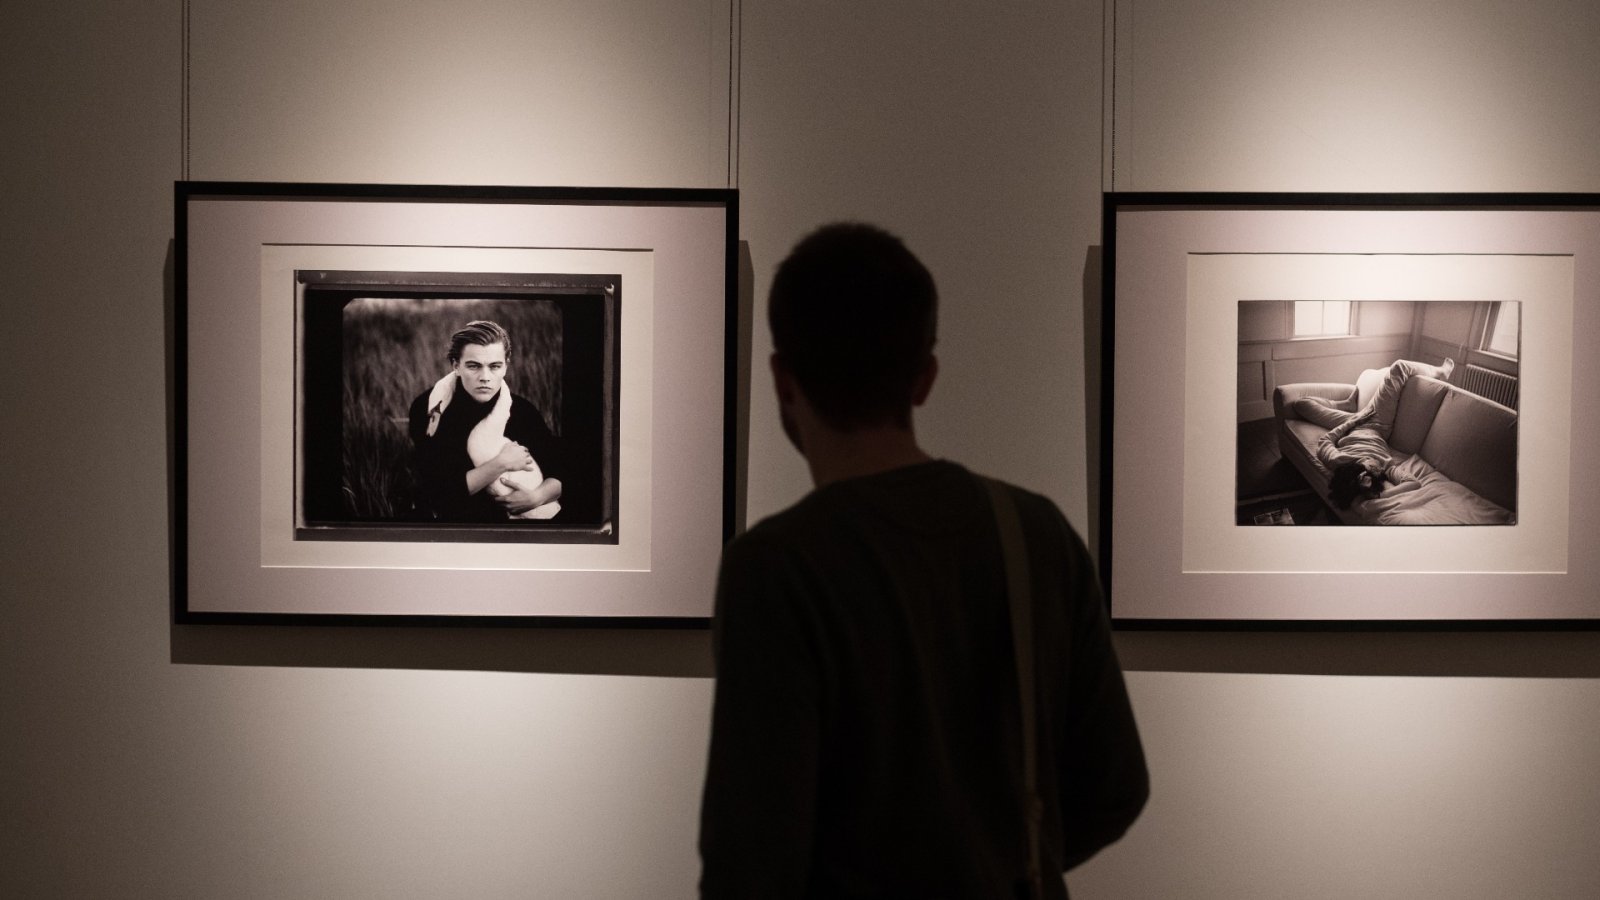 あなたはすでにこれらの有名な写真を知っていますが、彼らの物語は何ですか?アニー・リーボヴィッツの最高傑作